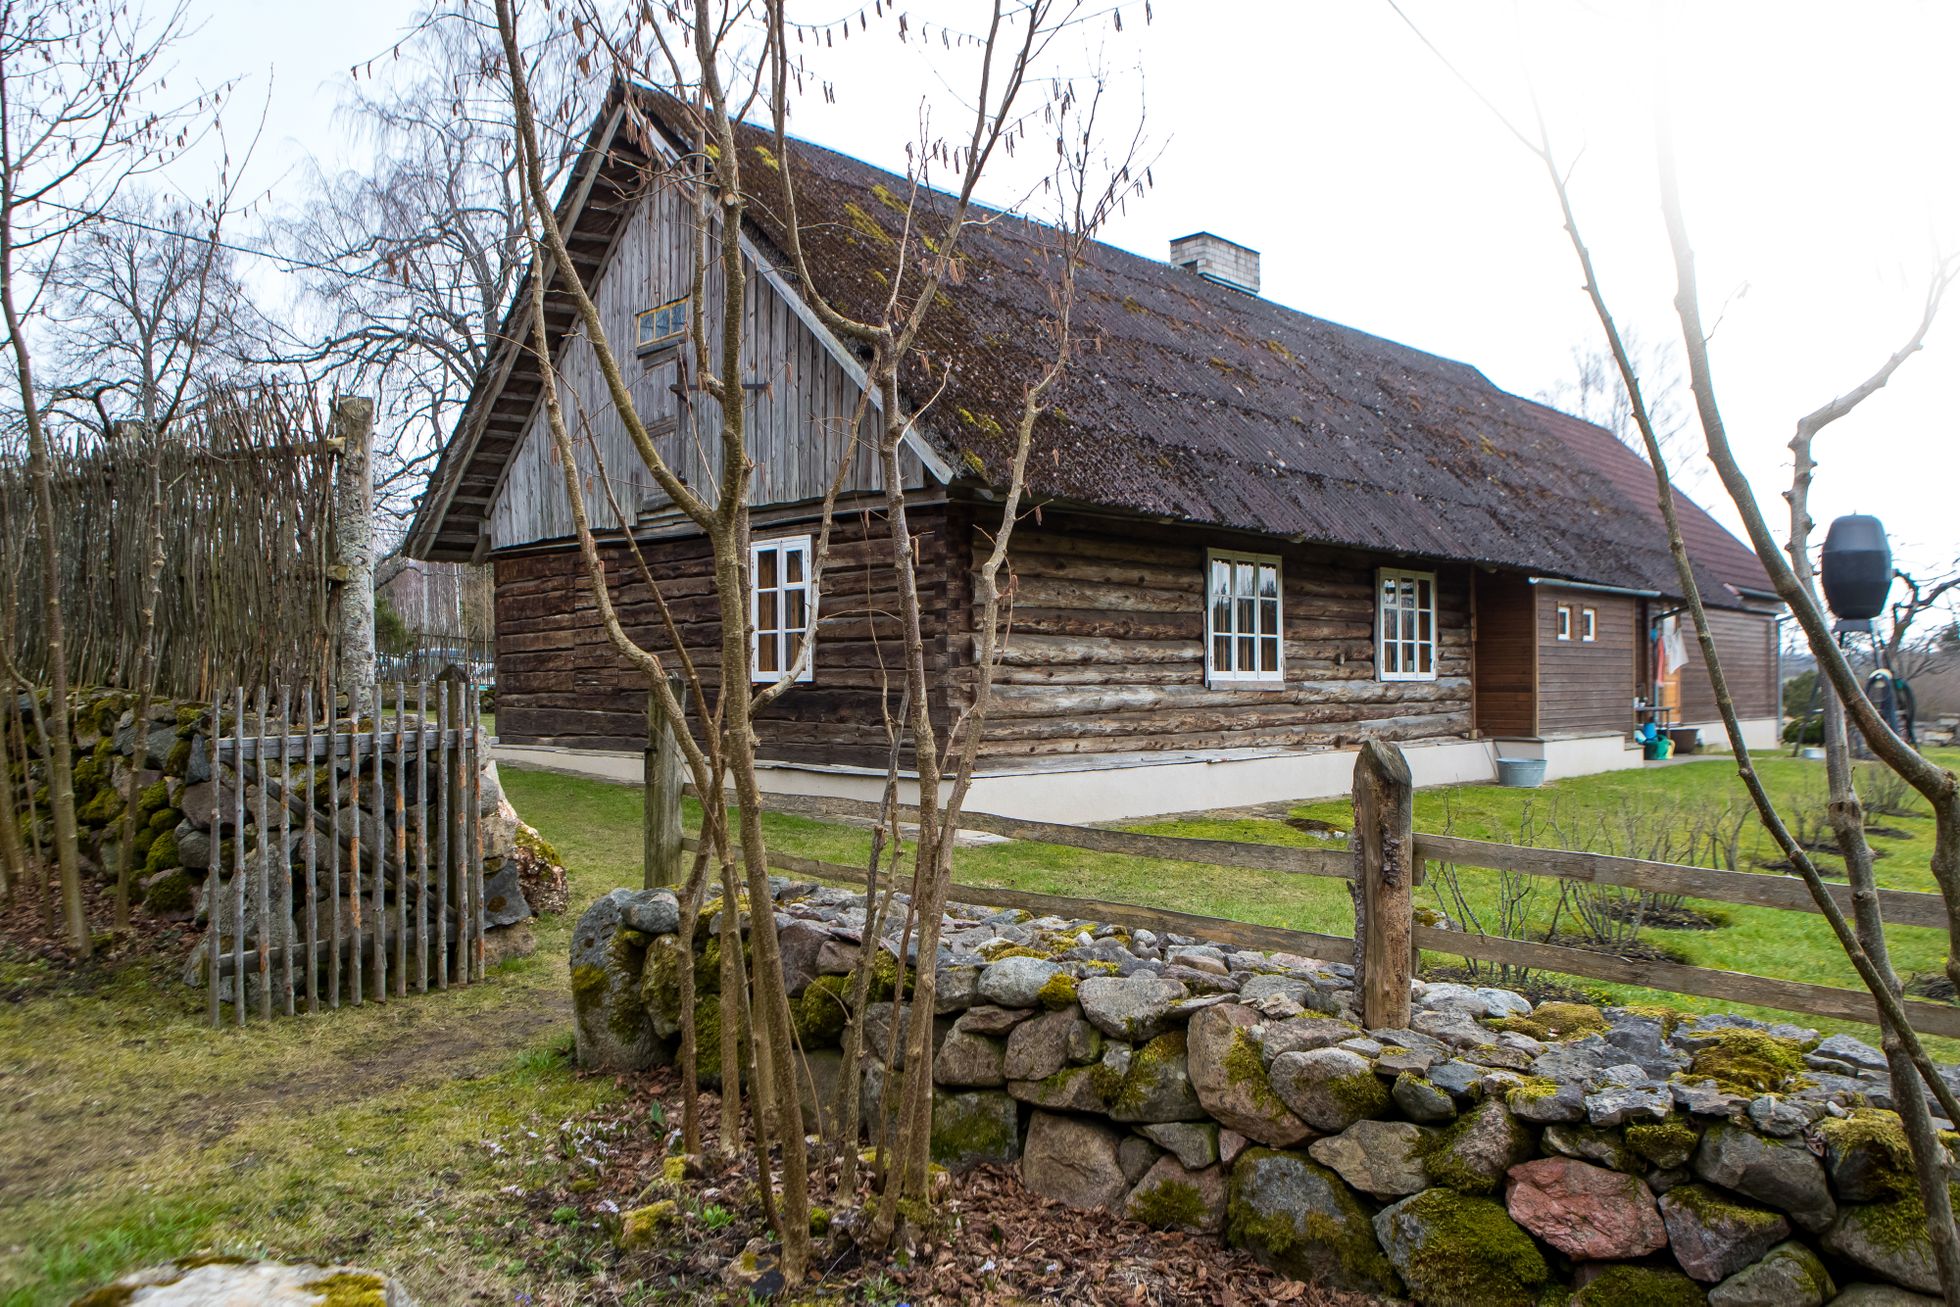 Aastal 2013 valiti Saatemäe talu Leisi valla heakorrakonkursi “Kena kodu 2013” üheks kaunimaks pereelamuks. 